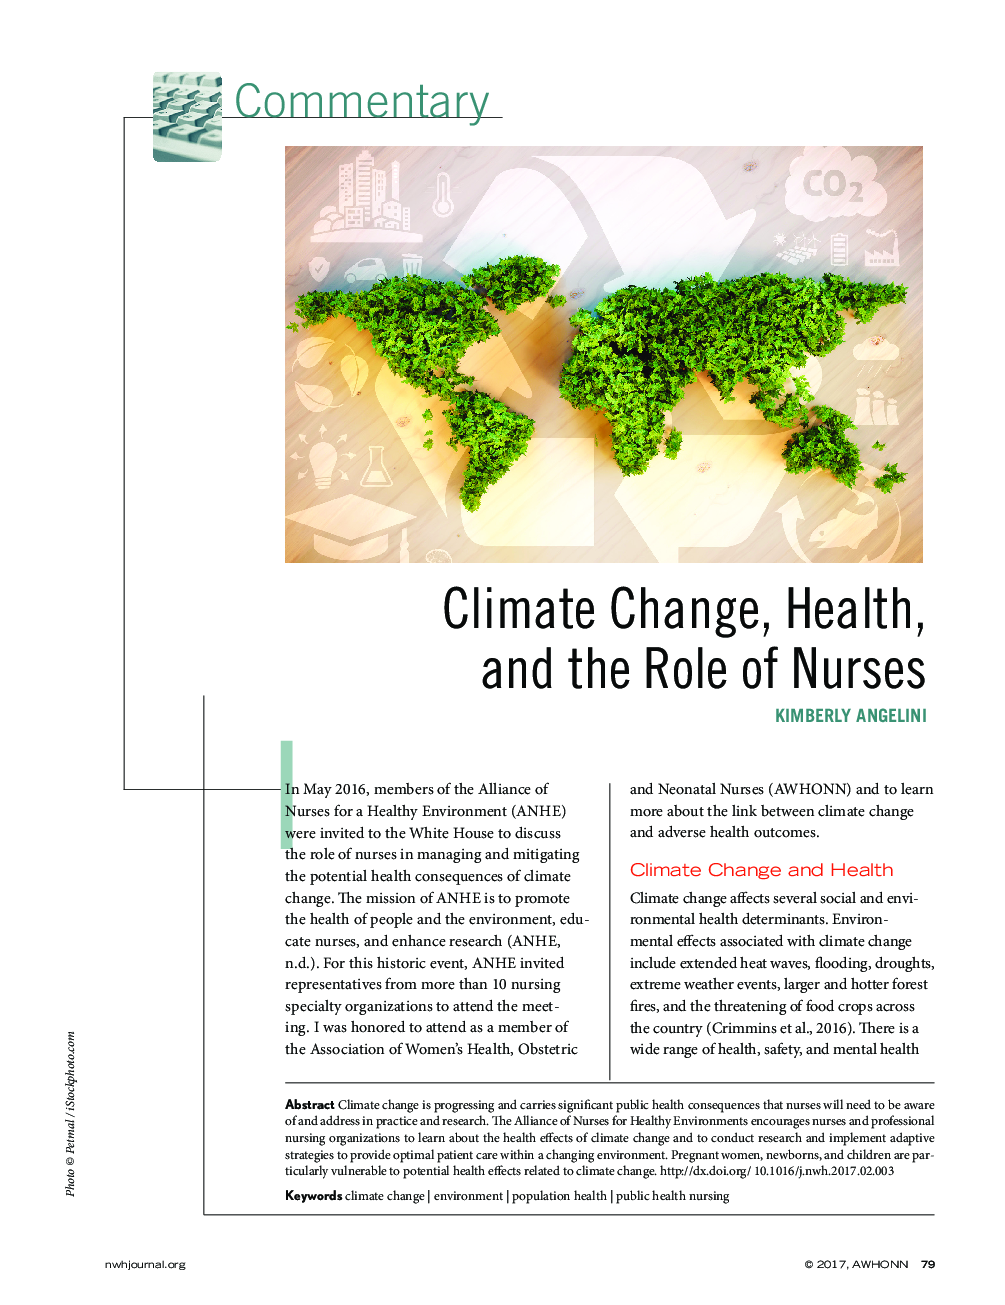 تغییرات آب و هوایی، بهداشت و نقش پرستاران 